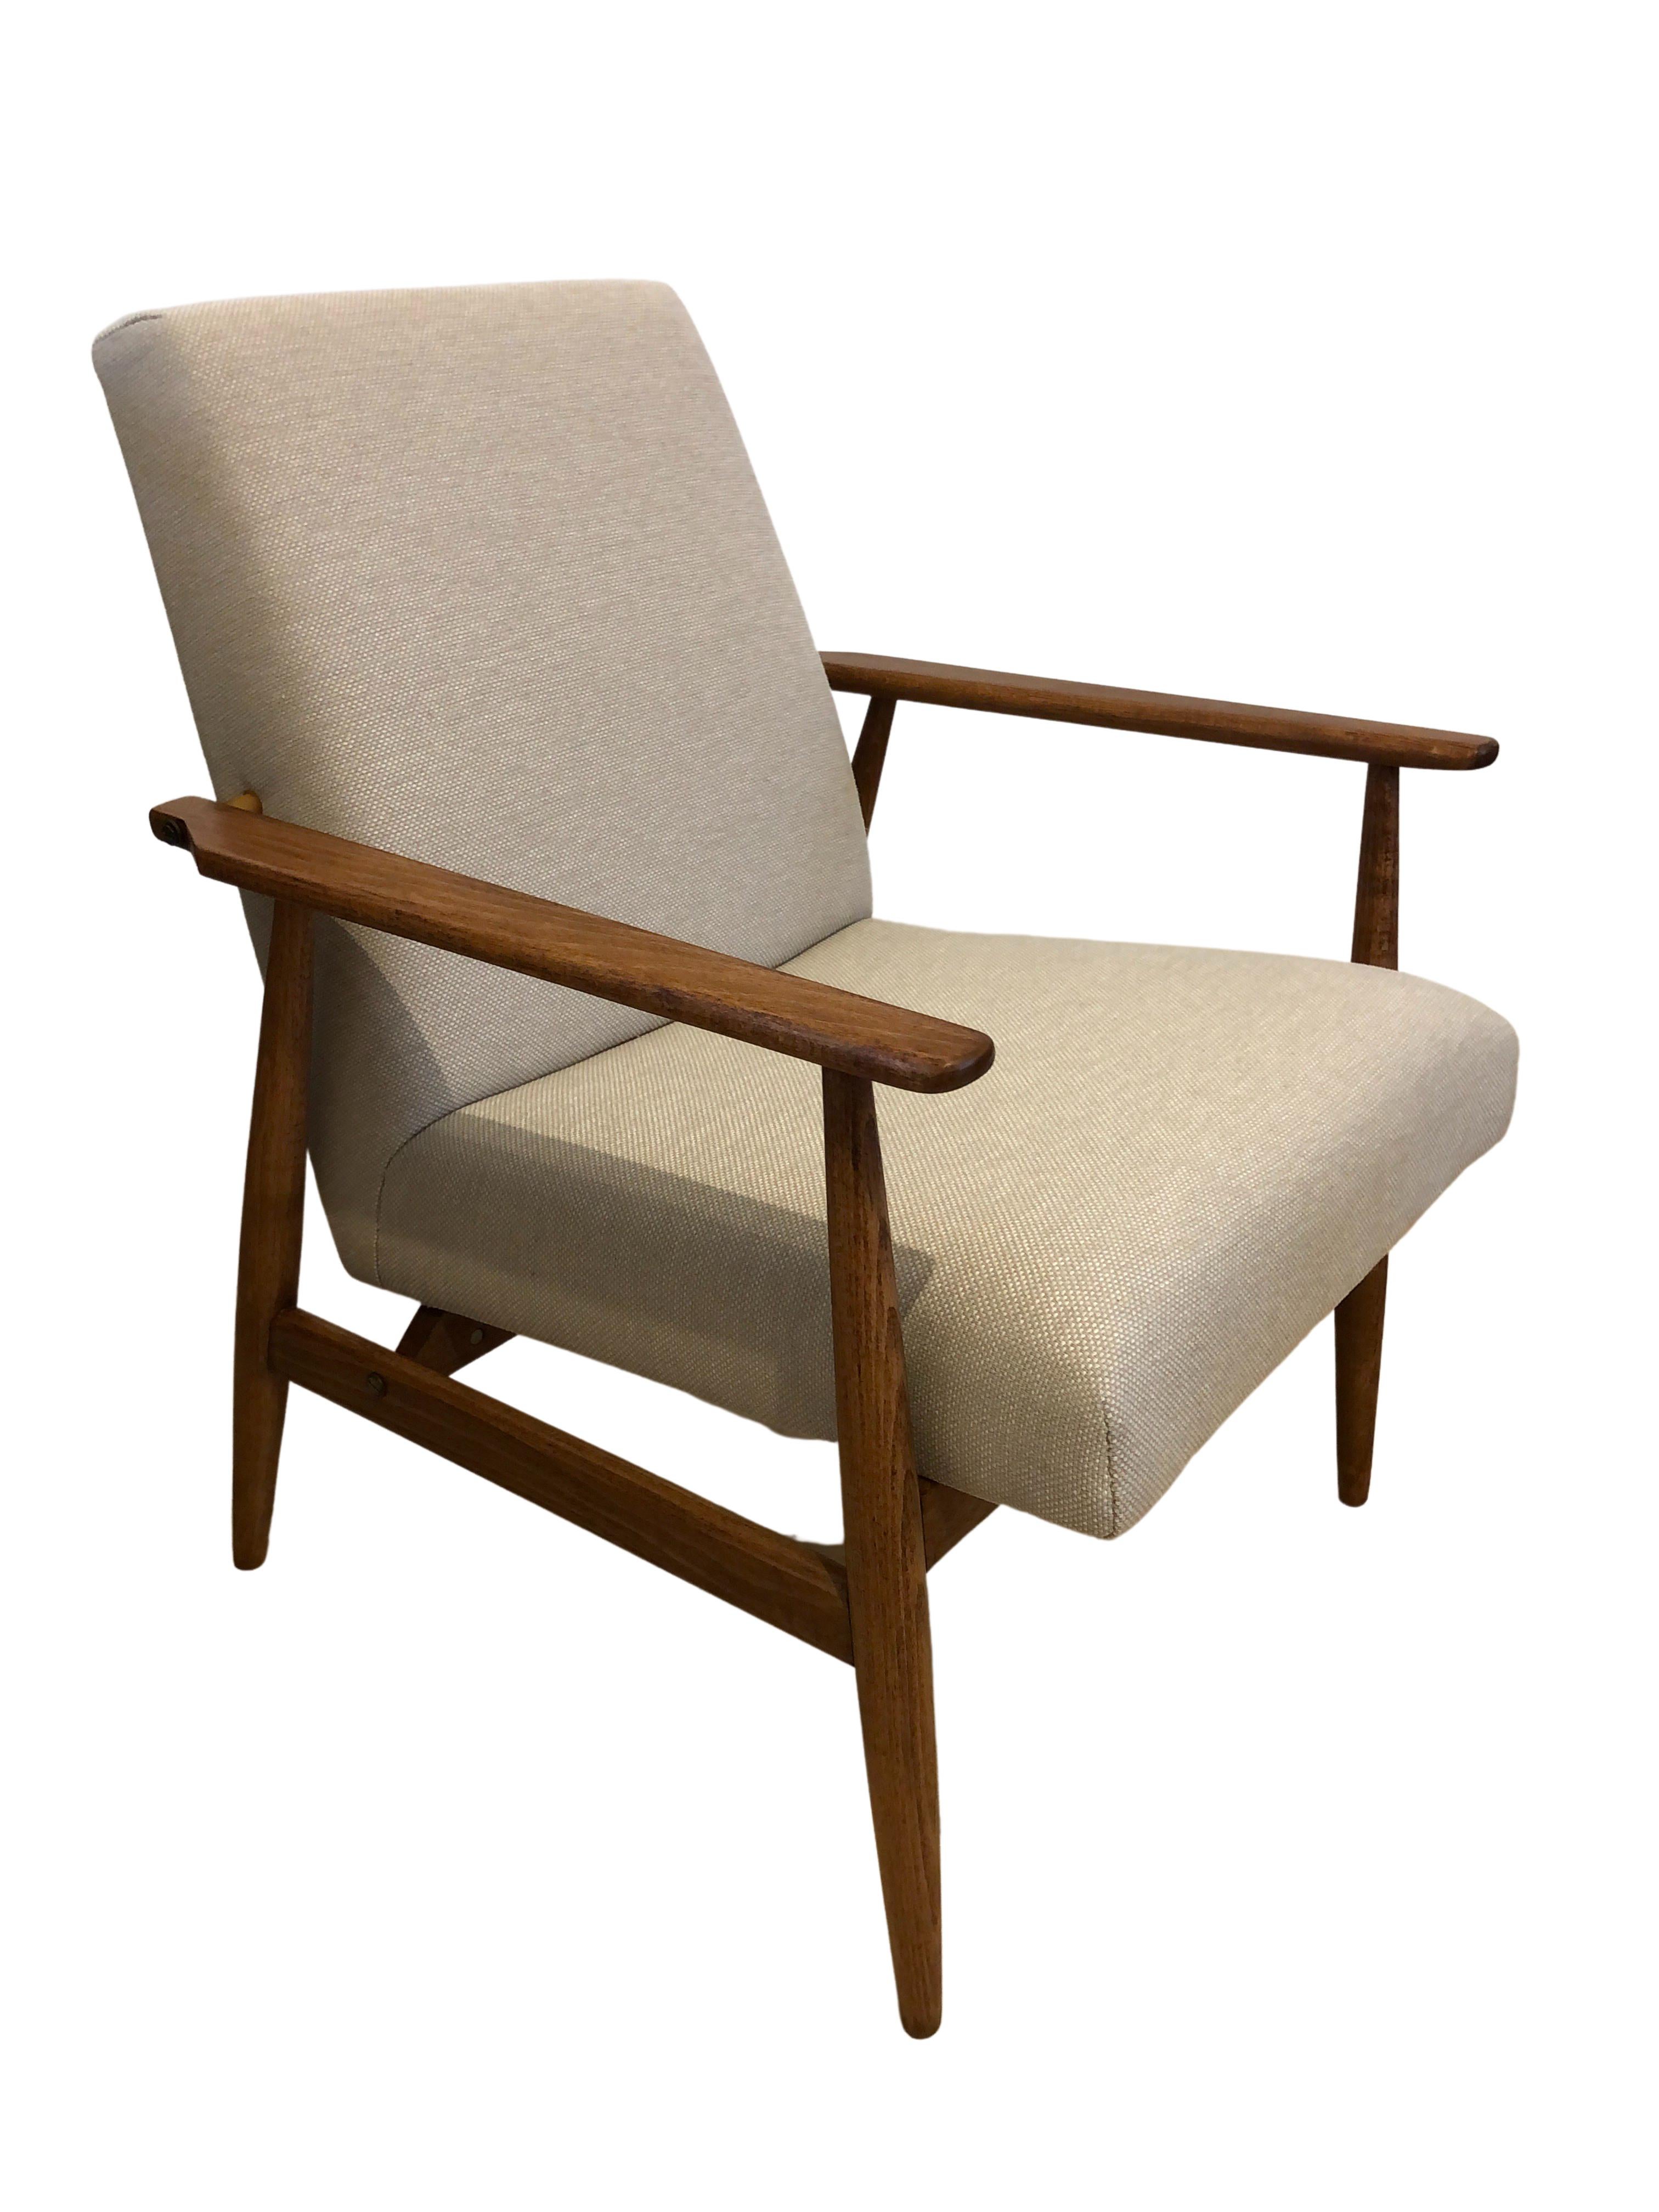 L'ensemble de deux fauteuils conçu par Henryk Lis. La structure est réalisée en bois de hêtre dans une chaude couleur noyer, avec une finition en vernis satiné semi-mat. La tapisserie est un tissu de coton et de lin lourd de couleur beige.